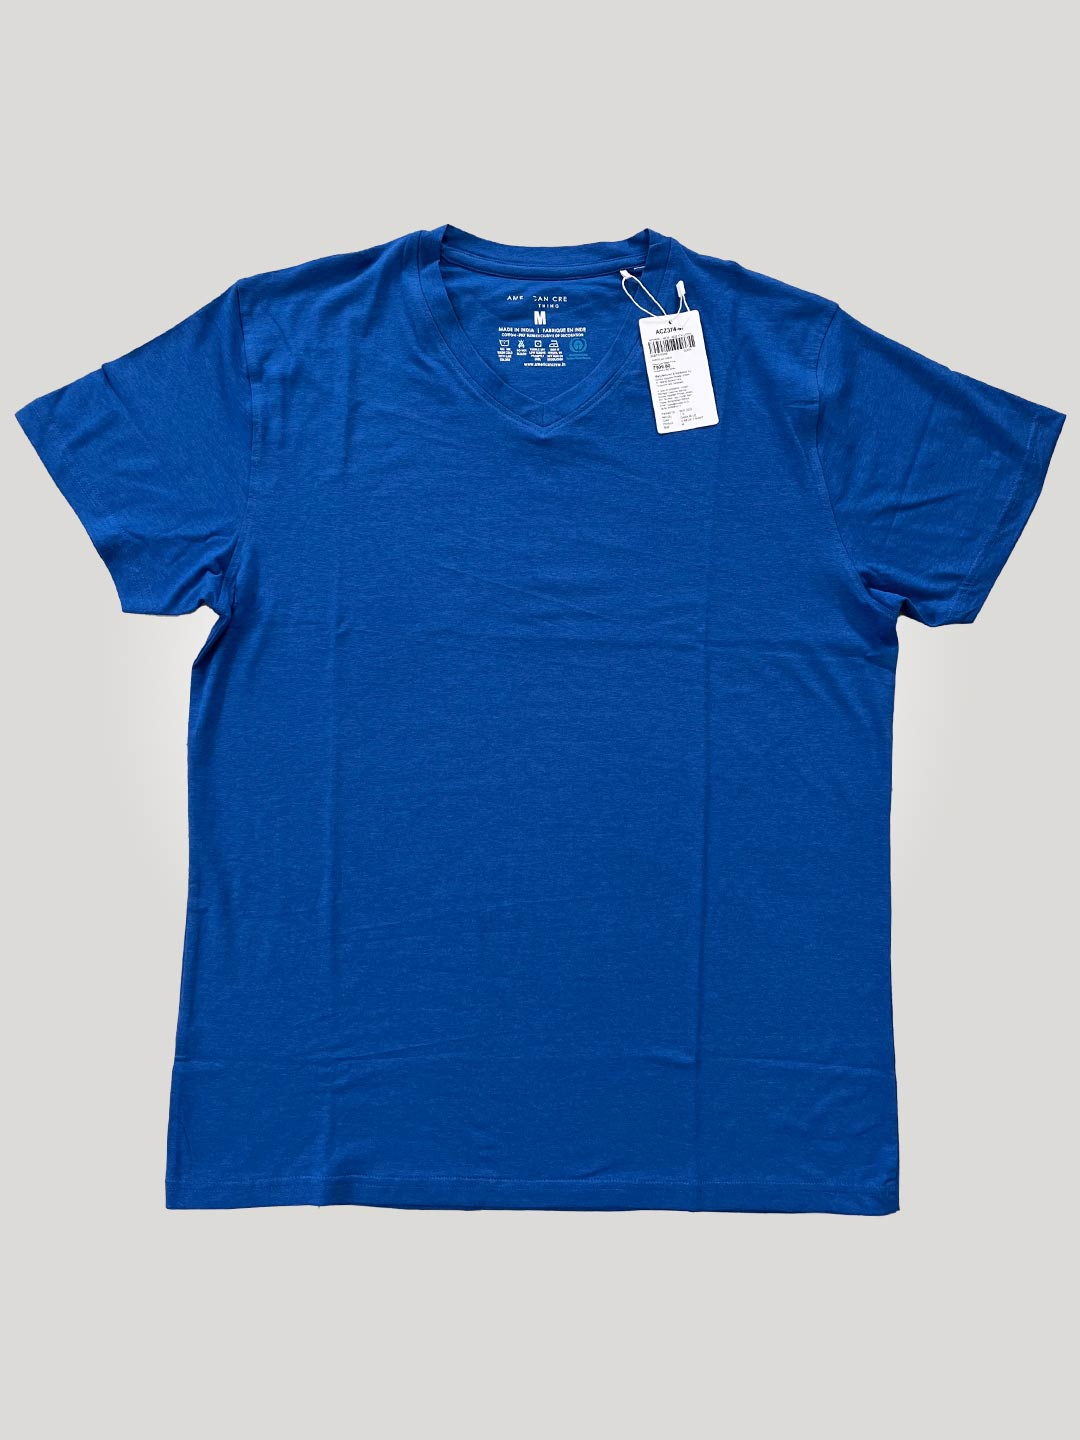 V Neck T-Shirt for Men - Dark Blue (Clearance - No Exchange No Return)